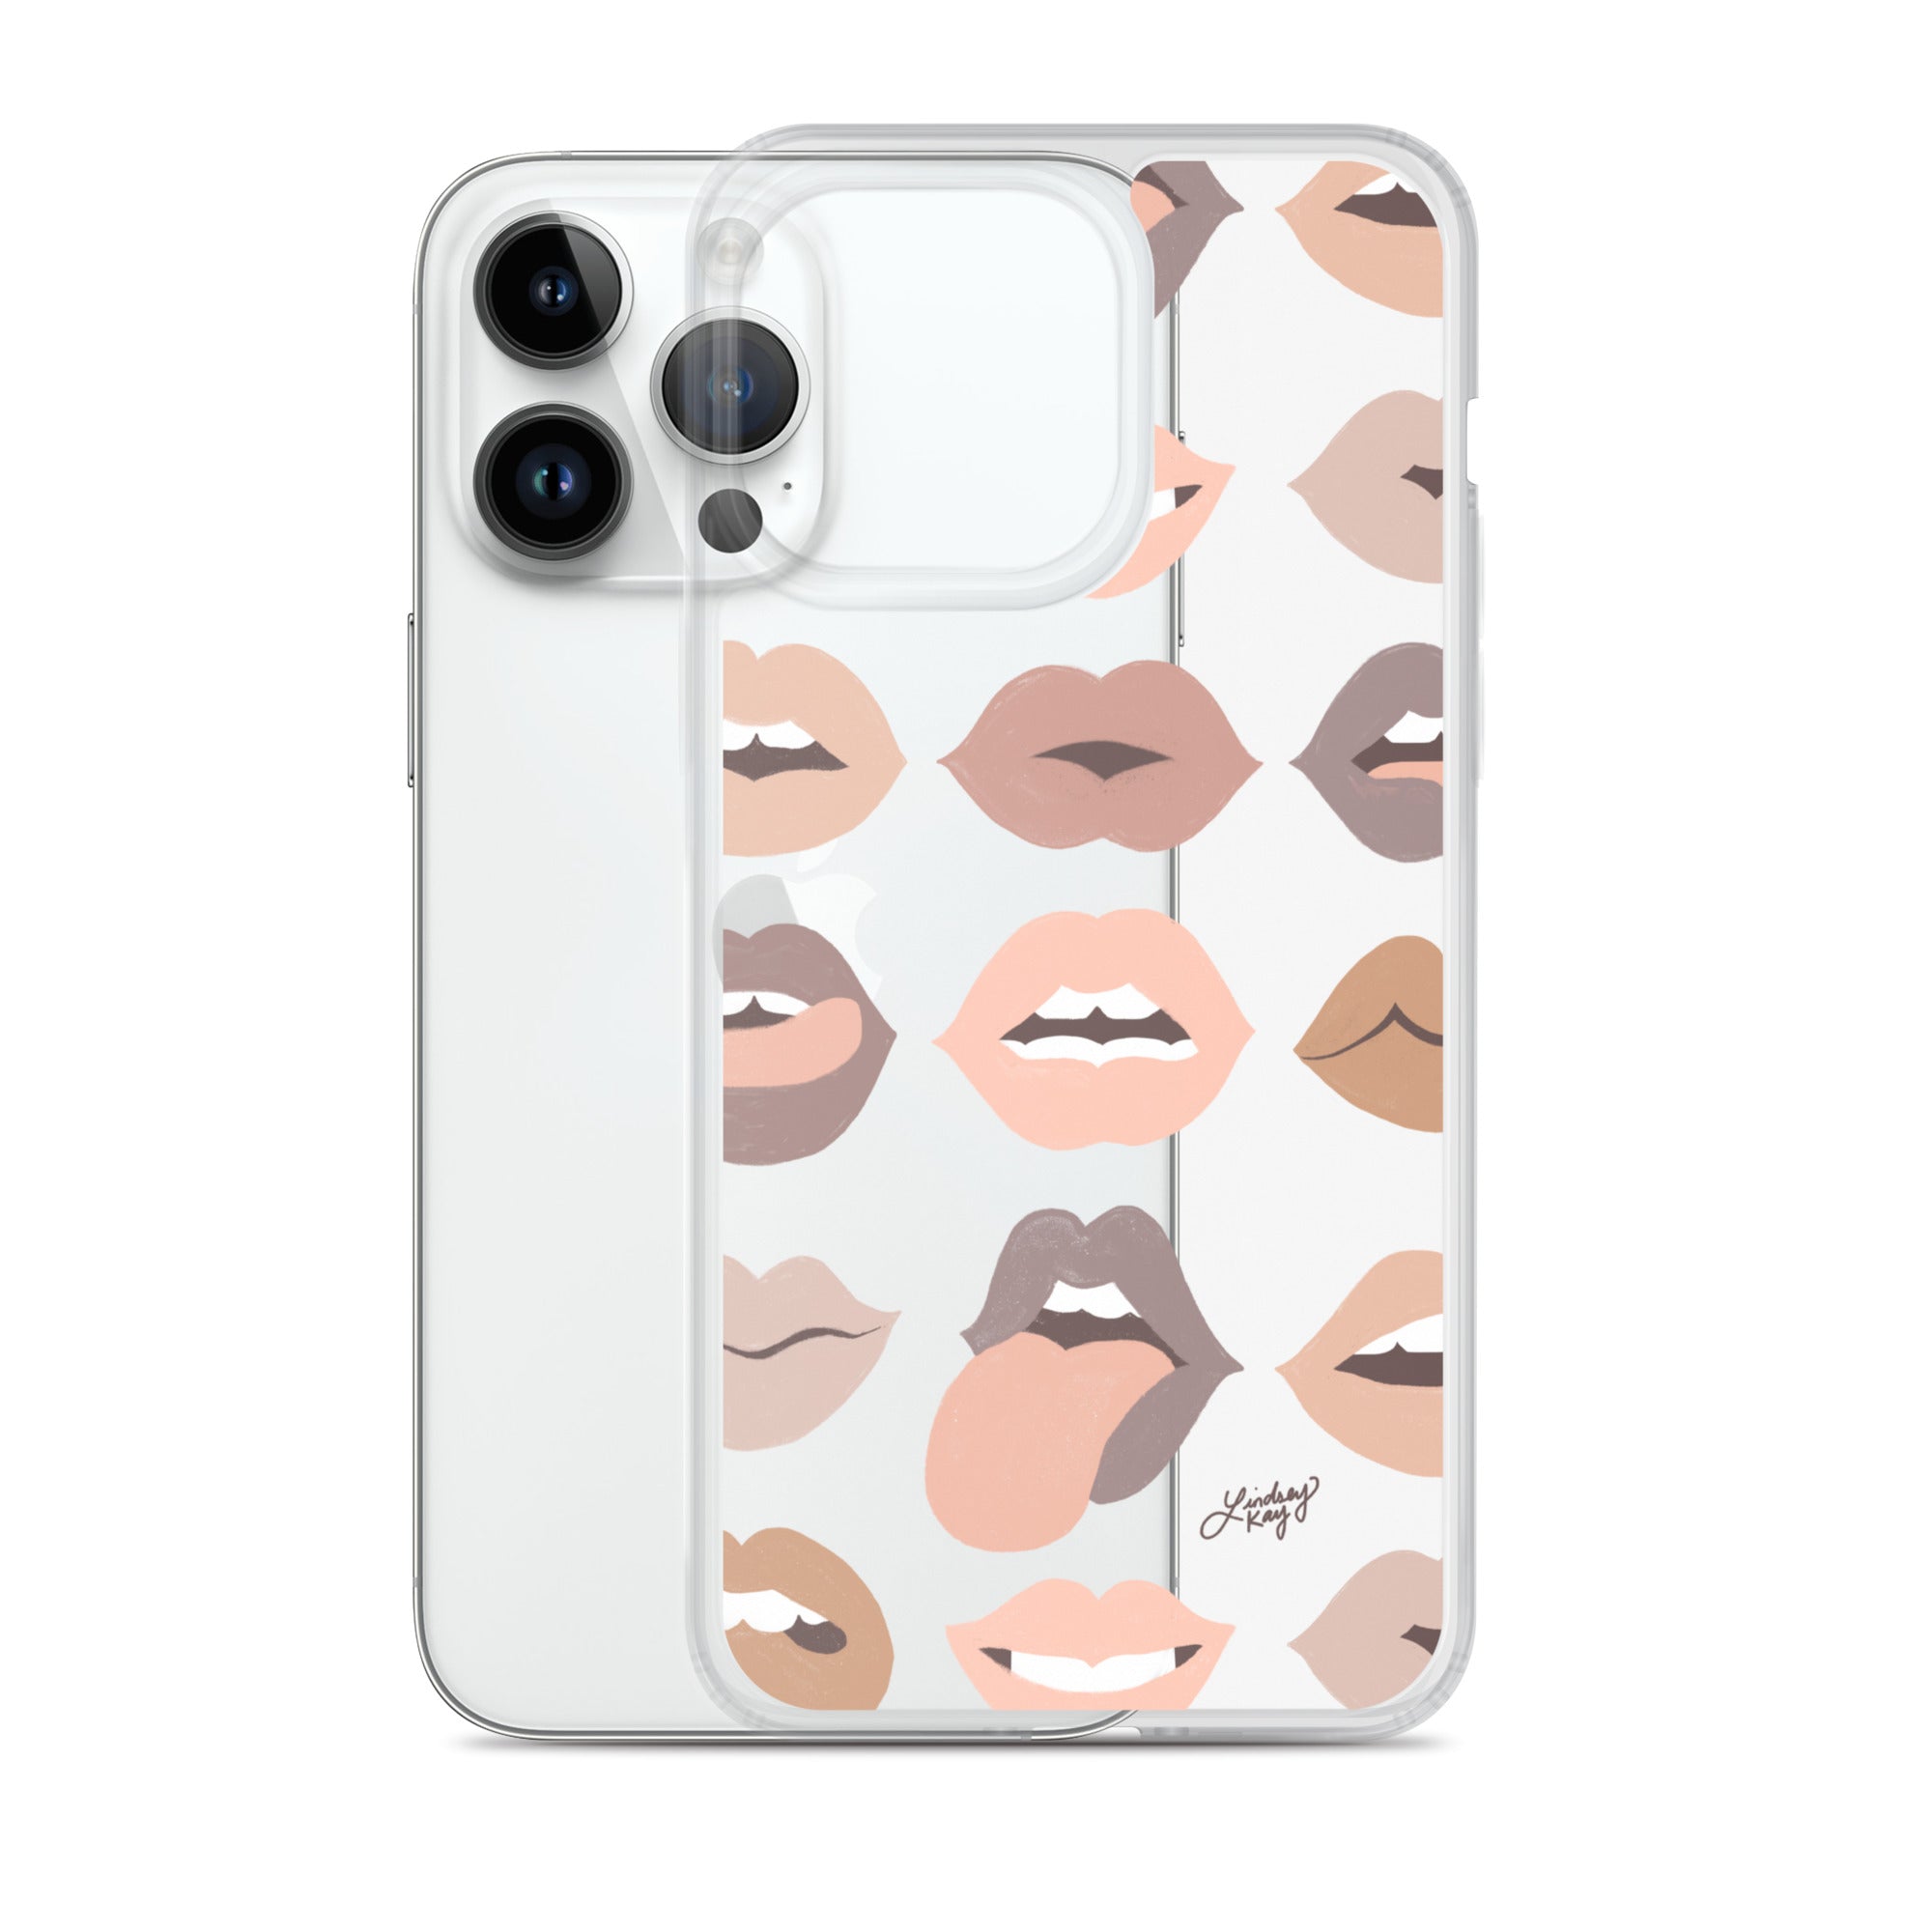 Labios neutros de amor - Funda transparente para iPhone®